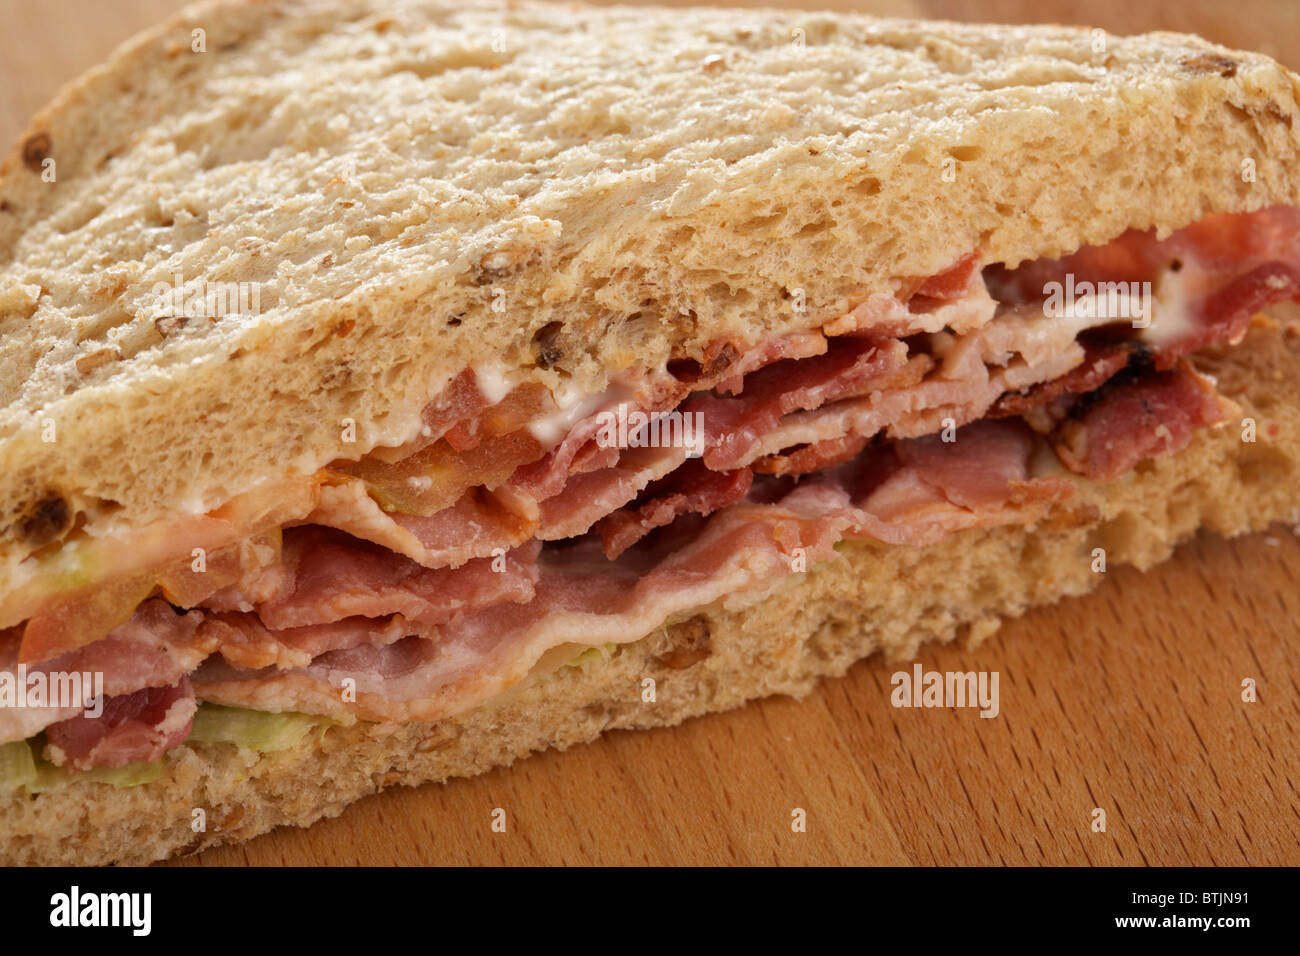 single triangle blt bacon lettuce tomato sandwich in malted brown malt bread Stock Photo